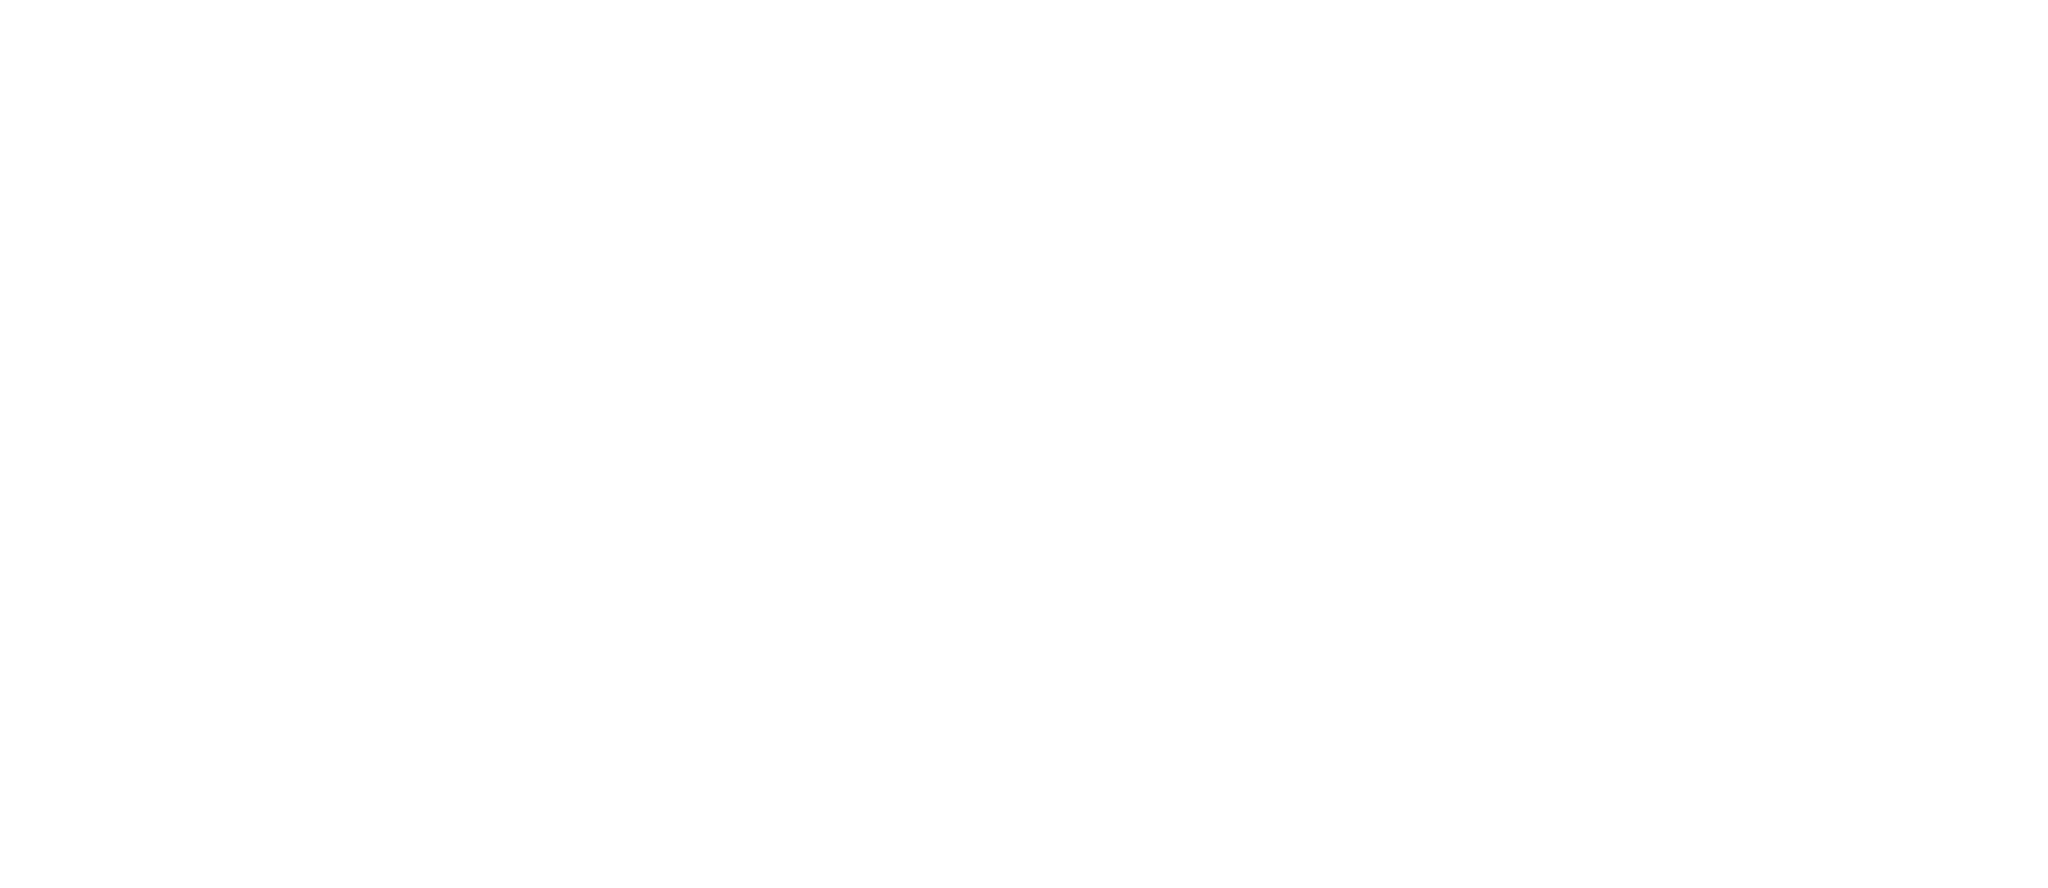 transparent soundcloud logo